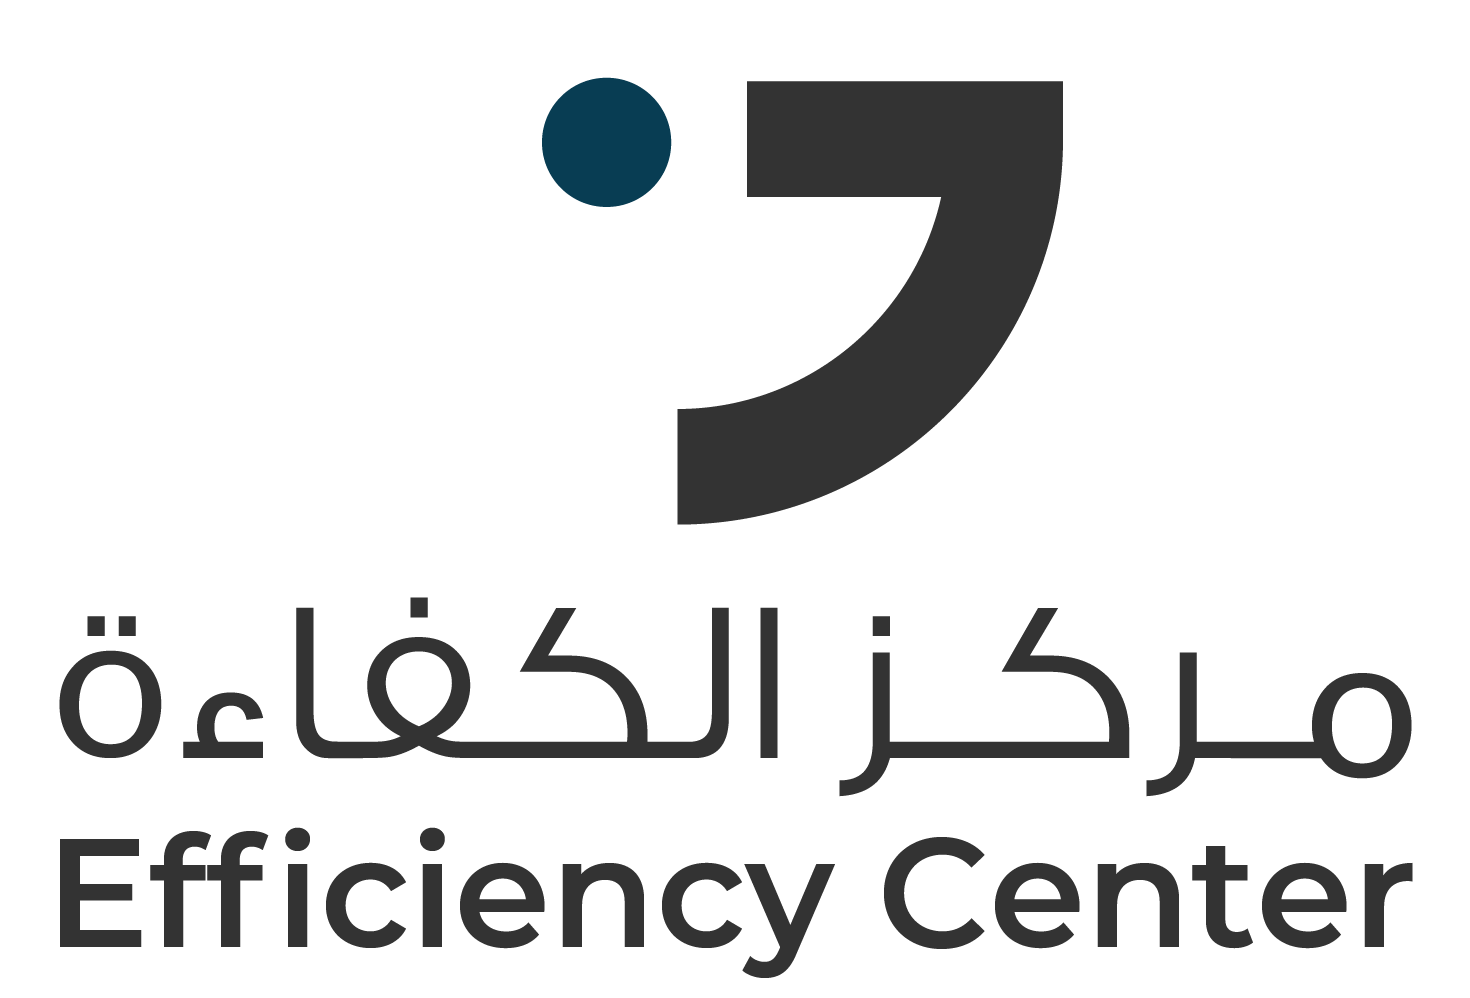 Efficinecy Center